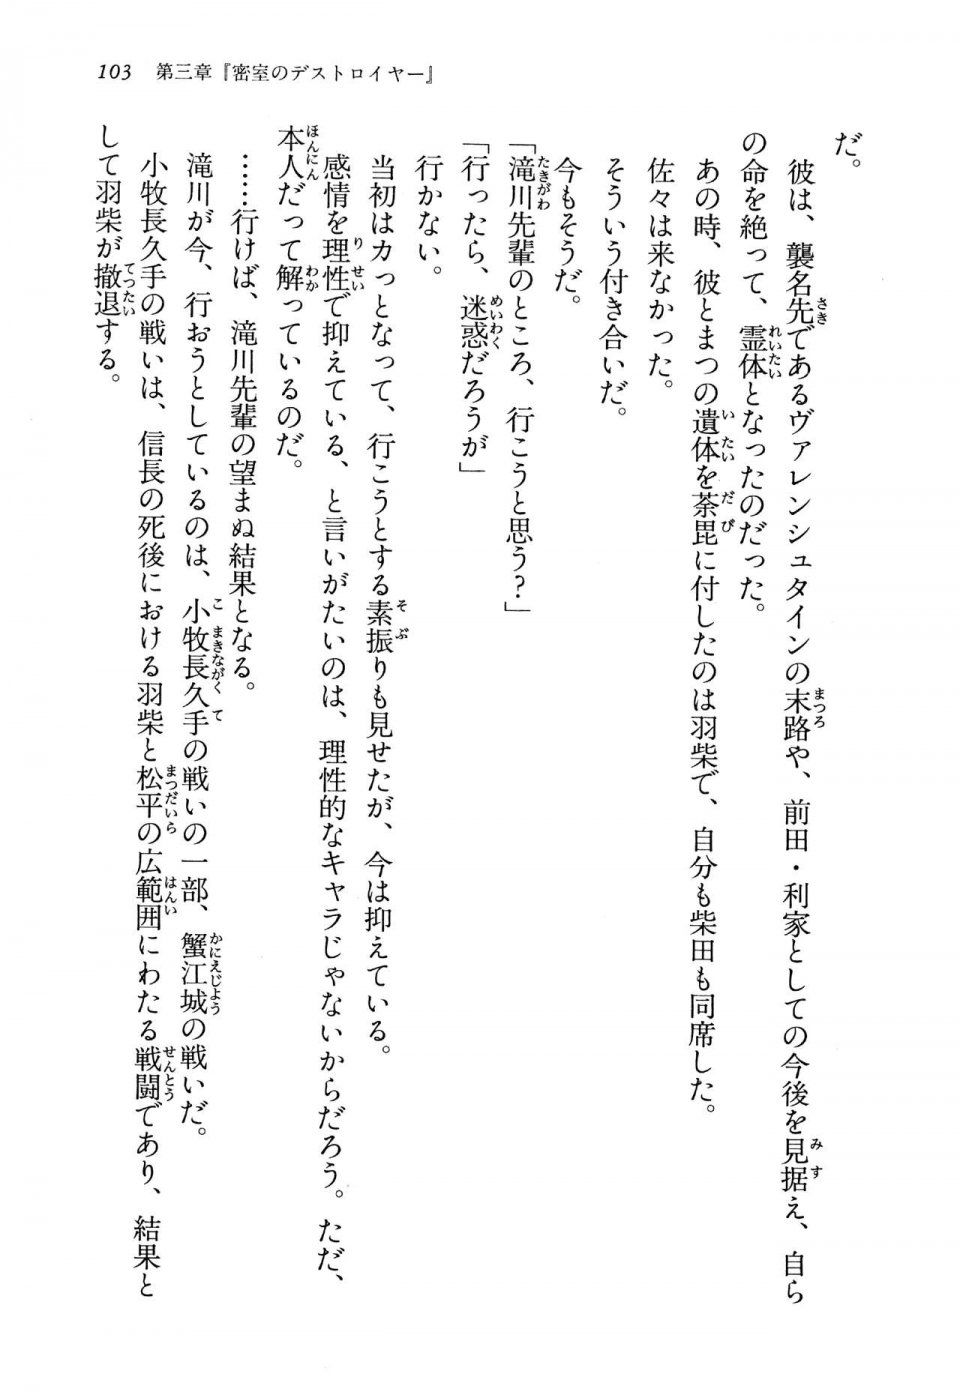 Kyoukai Senjou no Horizon LN Vol 13(6A) - Photo #103